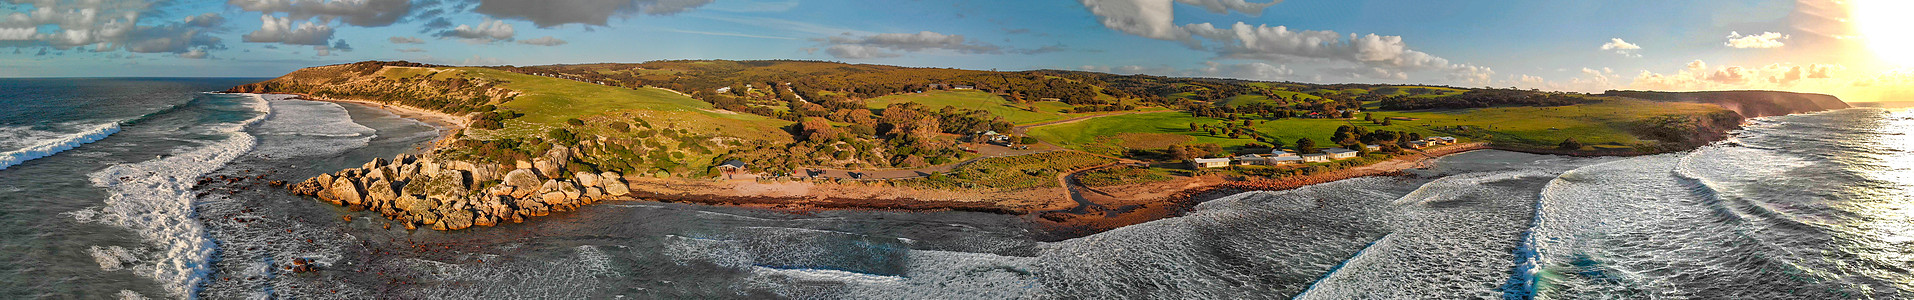 澳大利亚Kangaroo岛海滩全景空中观察地平线游泳海浪旅行泡沫阳光岩石袋鼠假期晴天图片